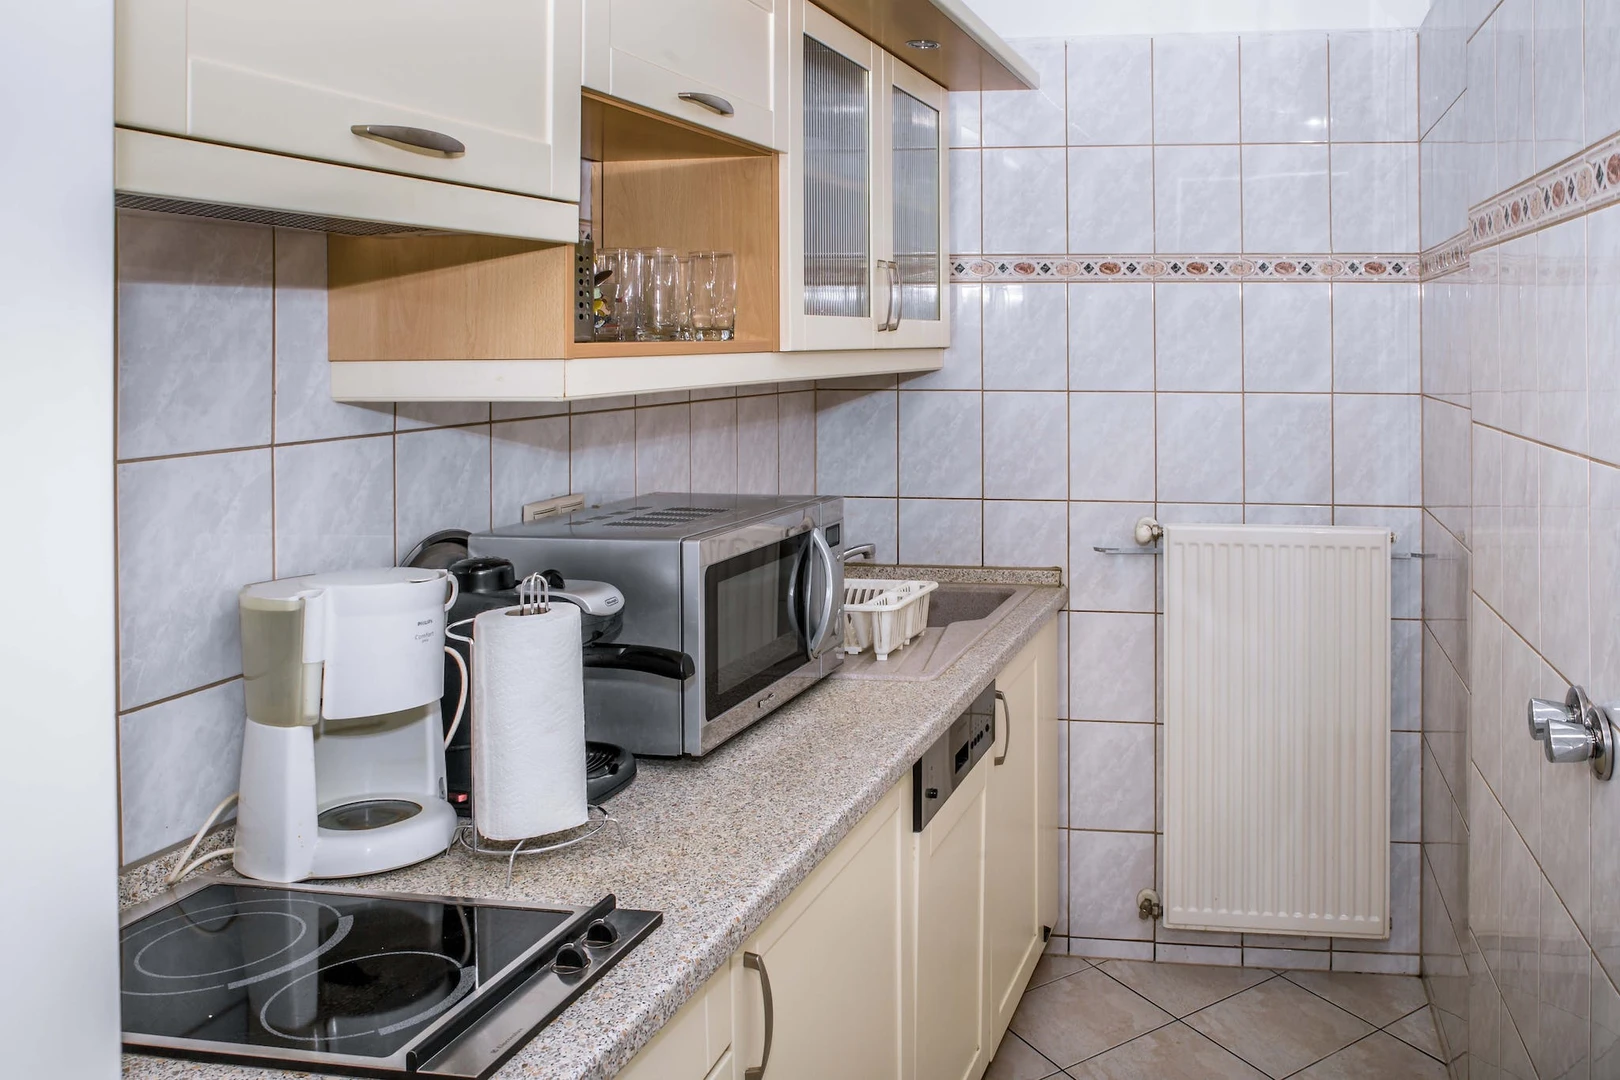 Habitación compartida barata en Budapest